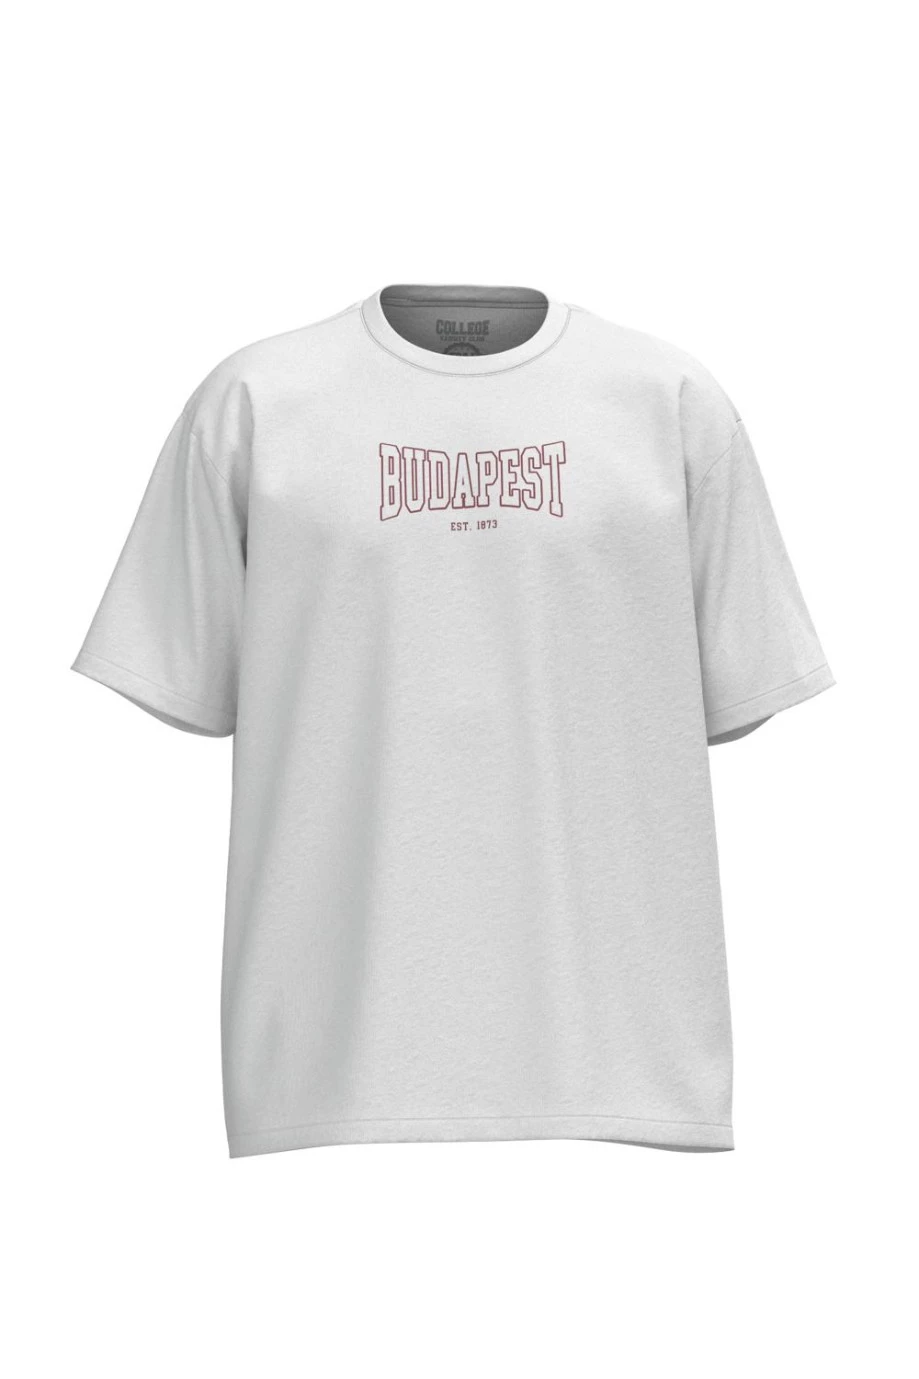 Camiseta oversize unicolor cuello redondo con diseño college